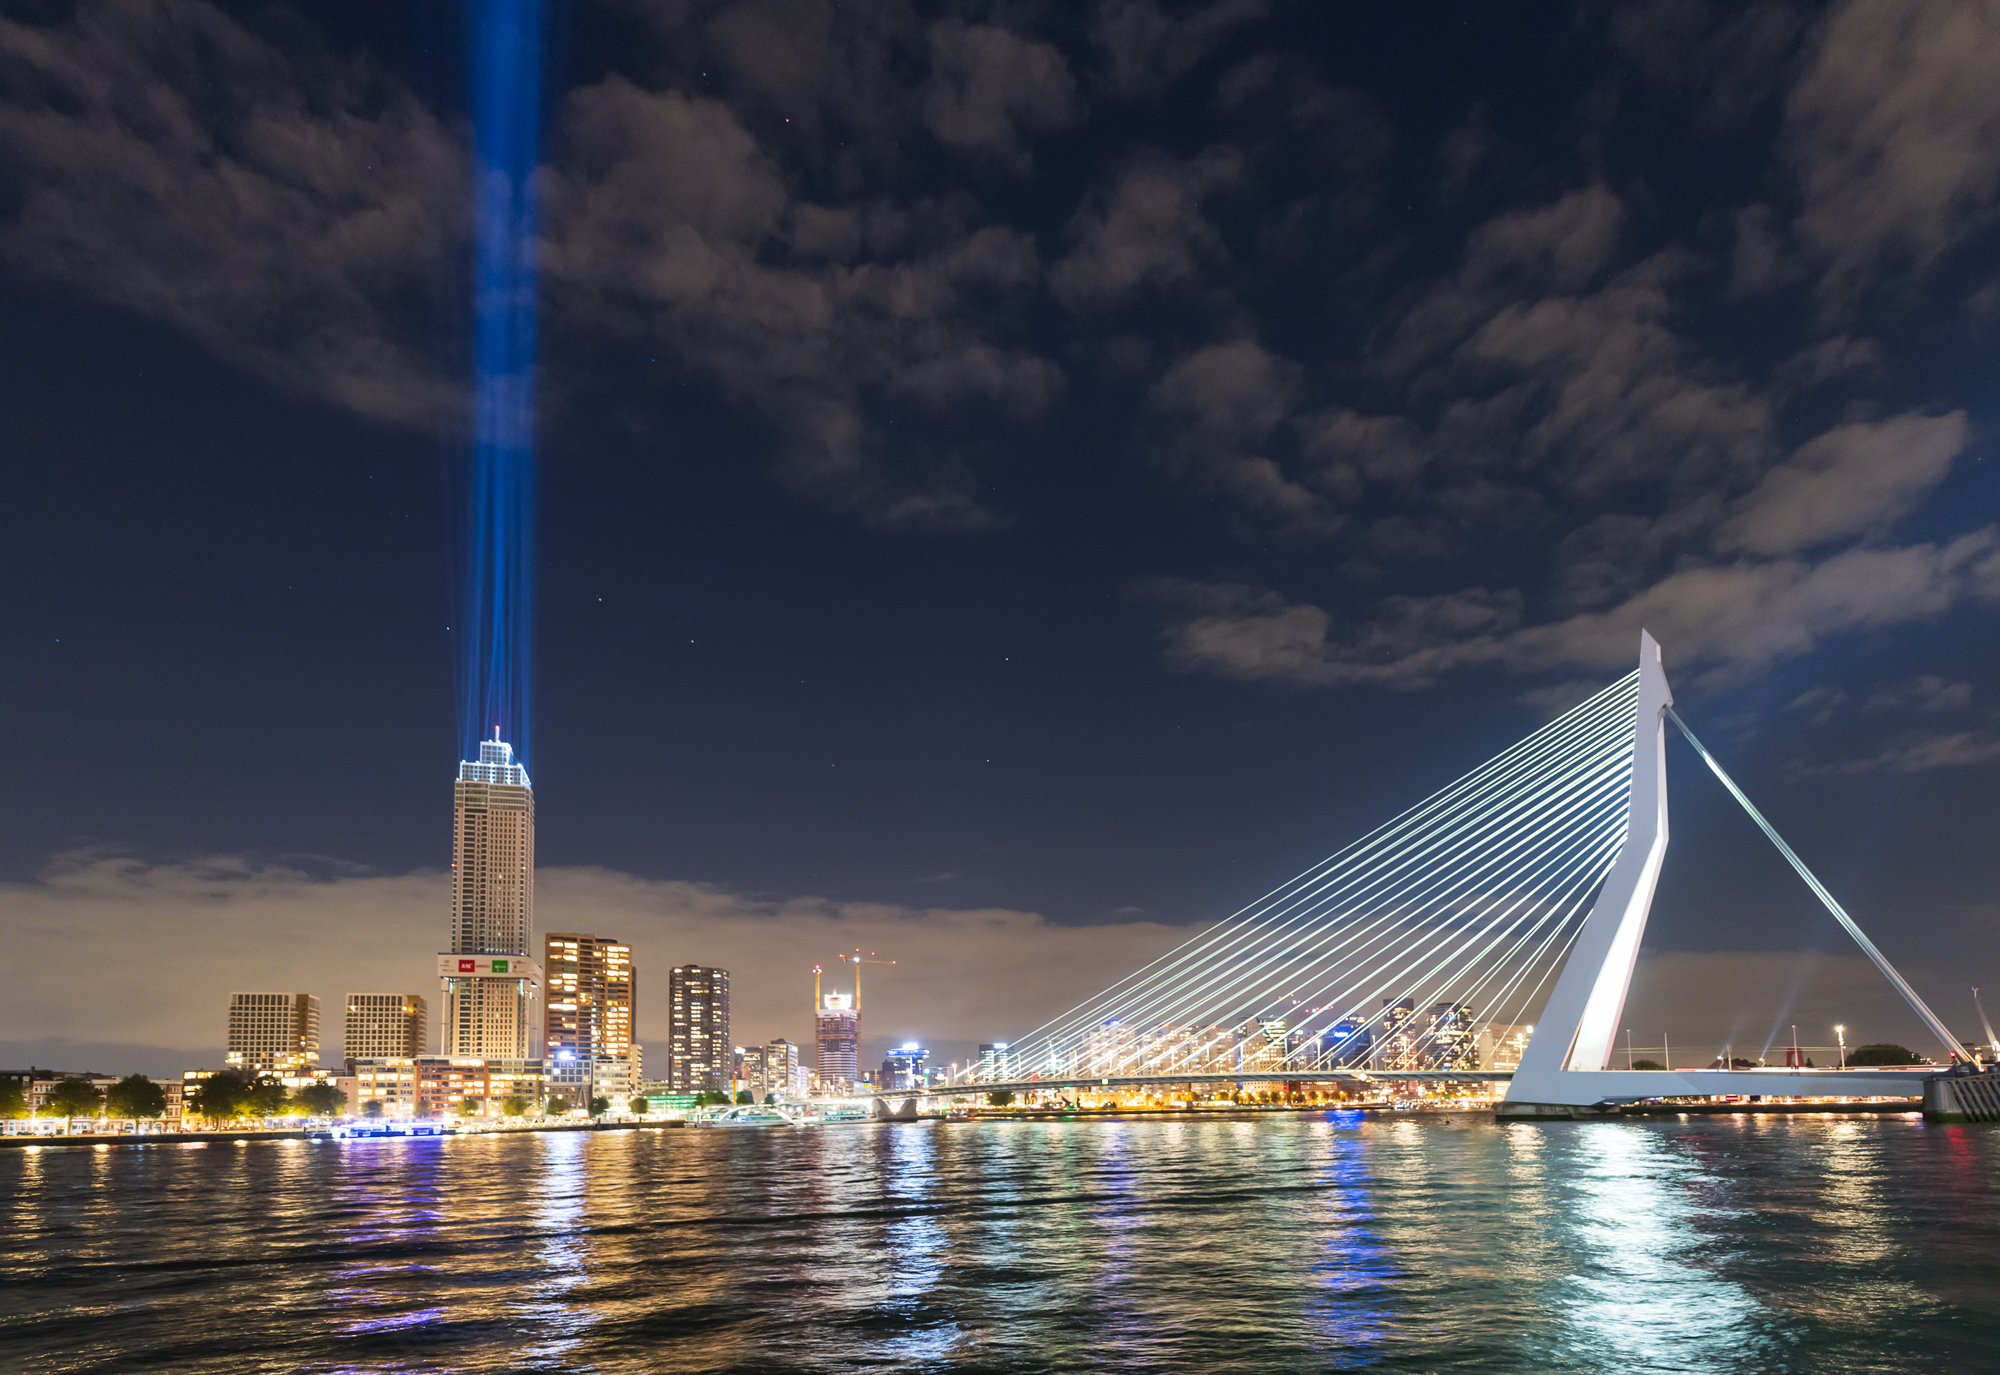 Zalmhaventoren tijdens de lichtshow met de Erasmusbrug in Rotterdam